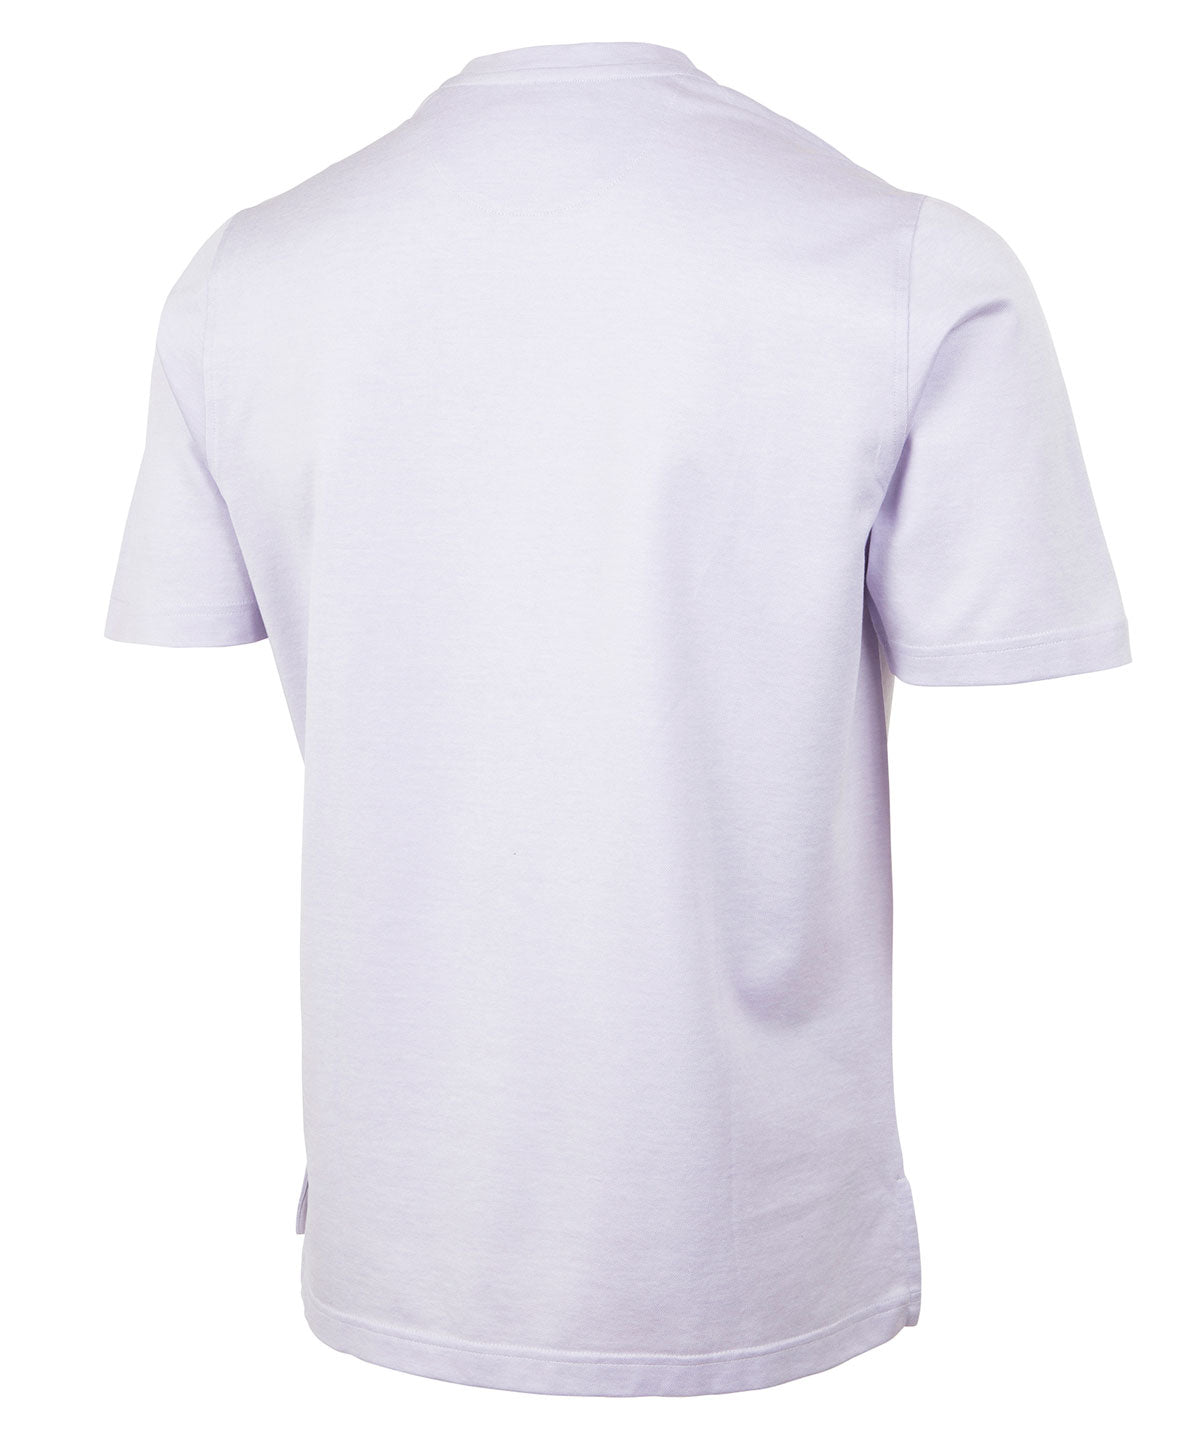 Signature Cotton Knit Short-Sleeve Cabana Tee Shirt